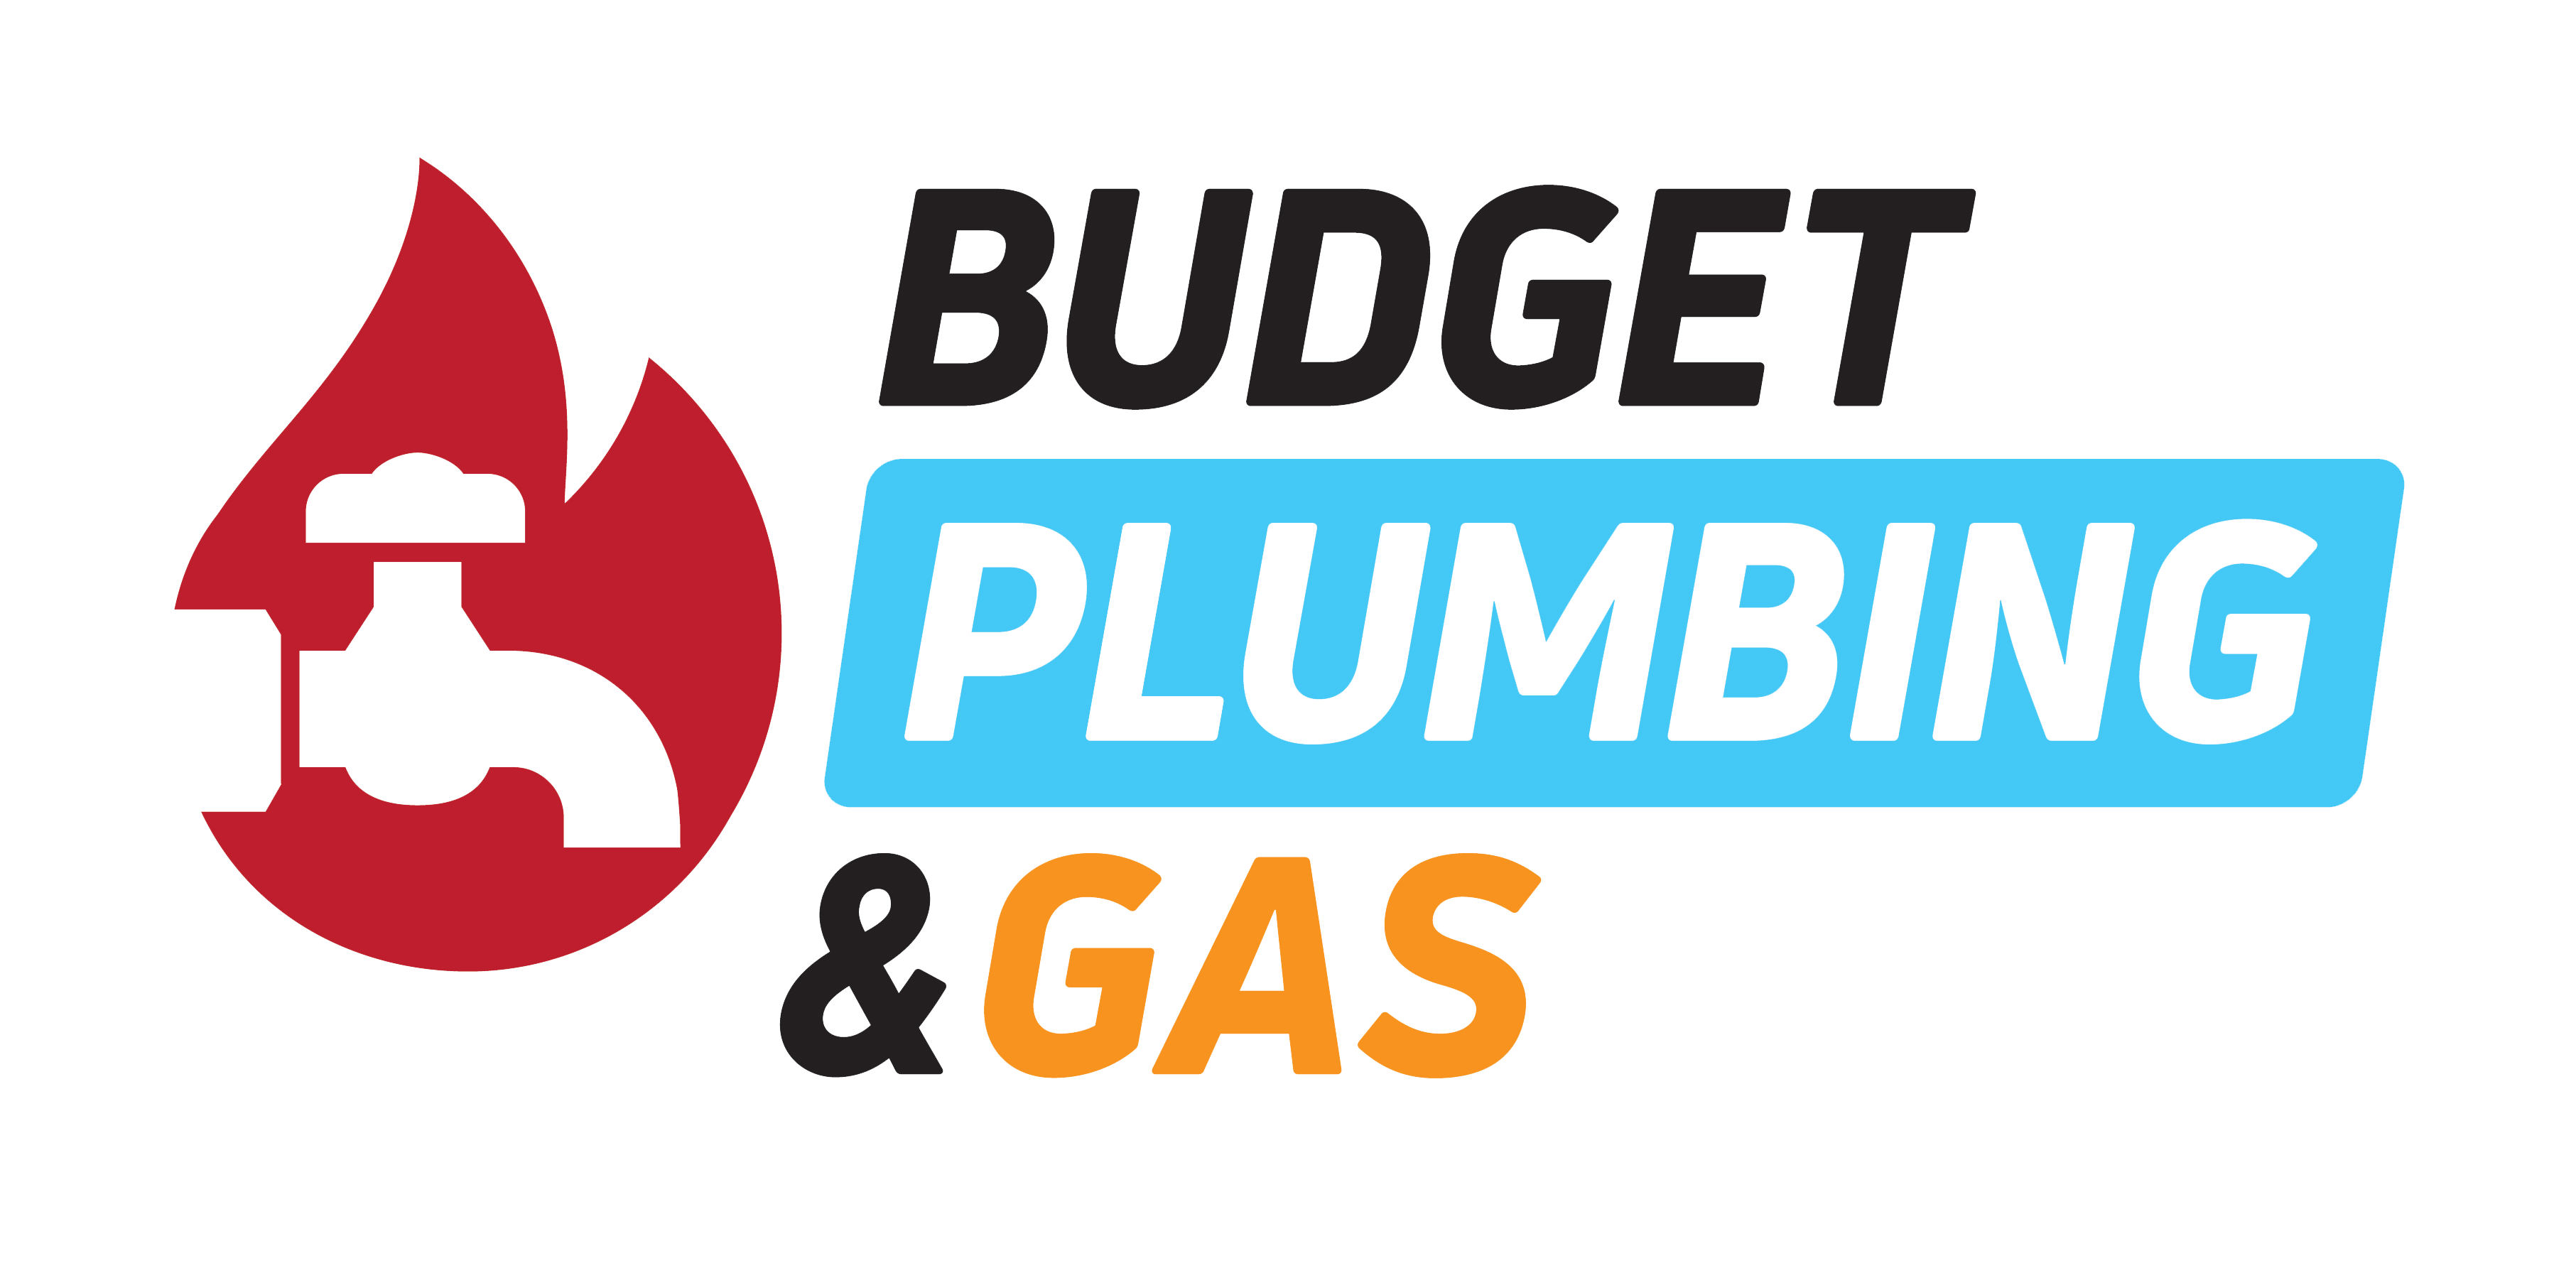 Budget Plumbing & Gas – Adelaide Plumber